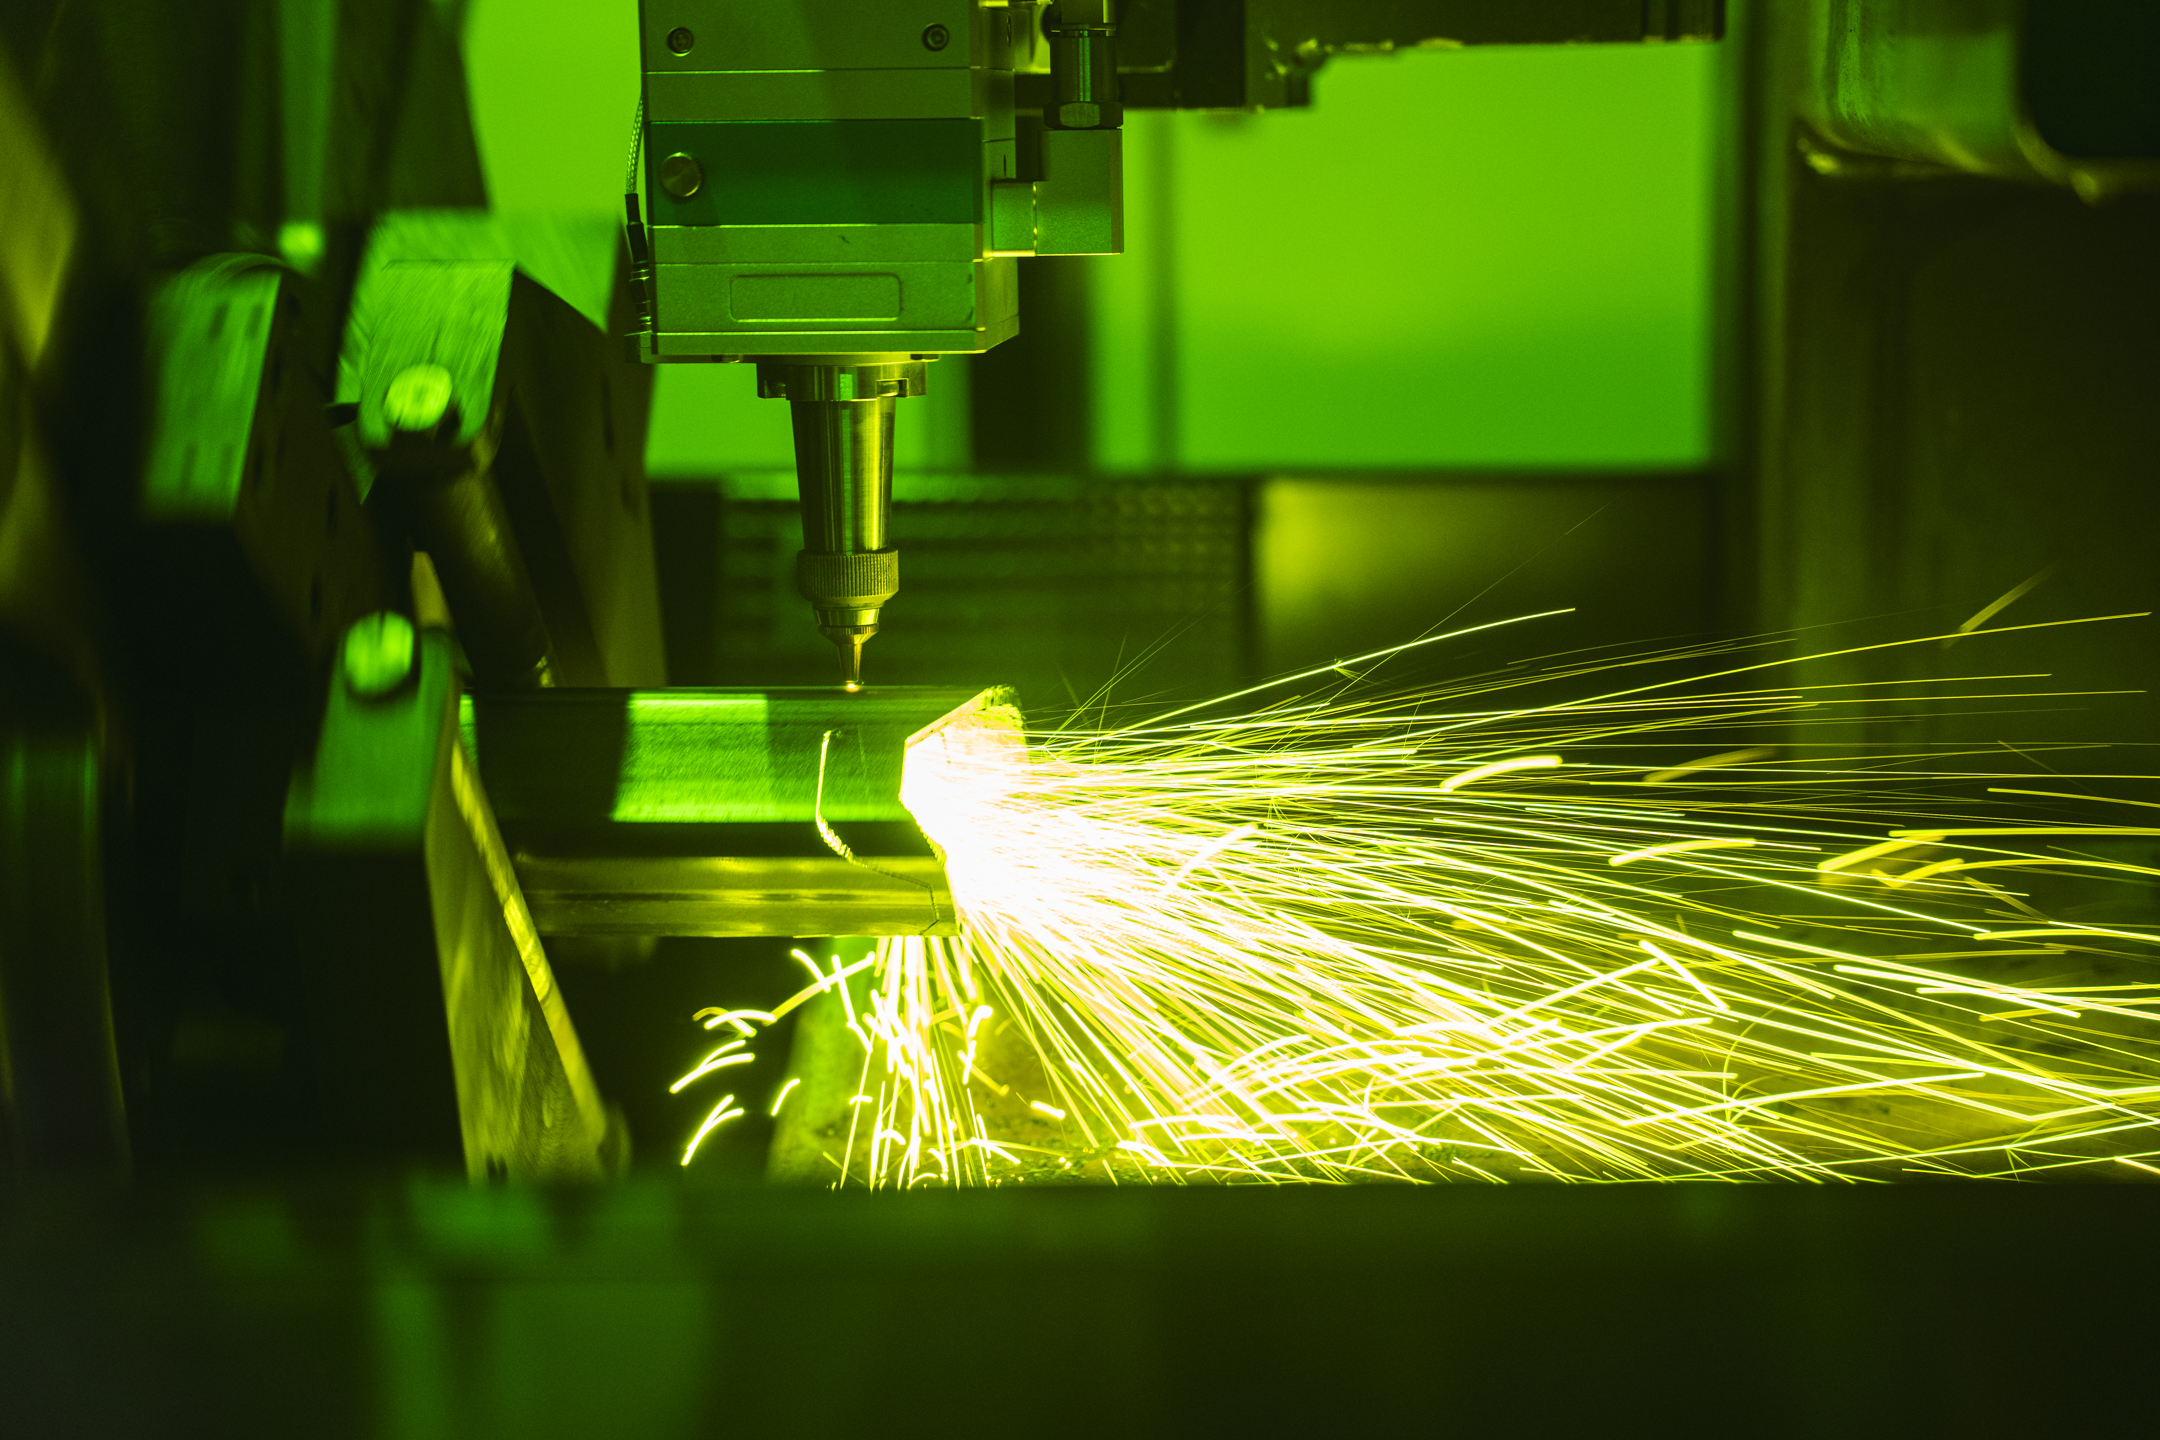 Aluminium Laser Cutting Services